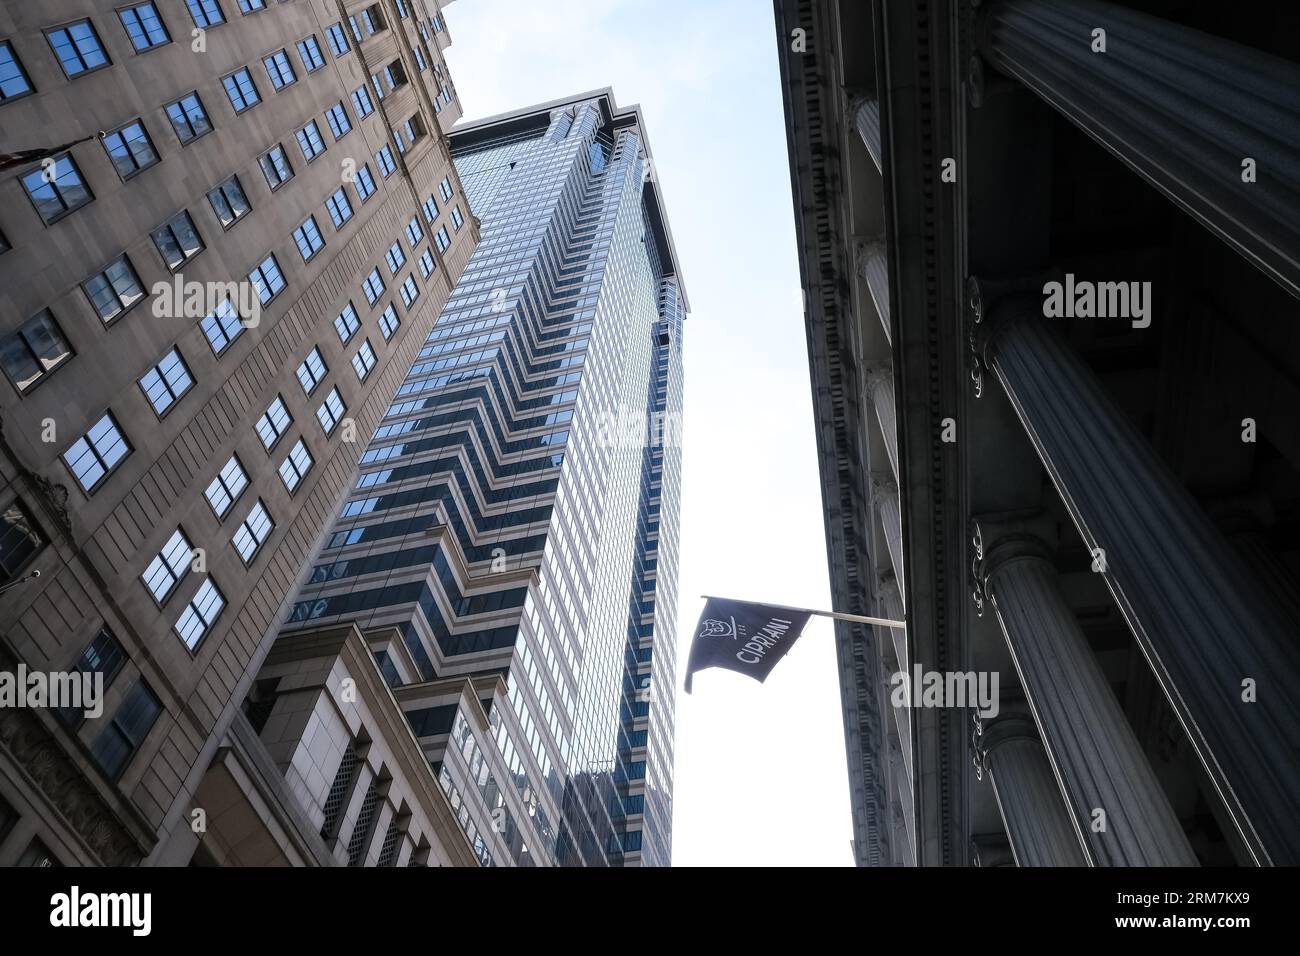 Dettaglio architettonico del ristorante Cipriani Wall Street situato nel quartiere finanziario di Lower Manhattan a New York City, USA Foto Stock